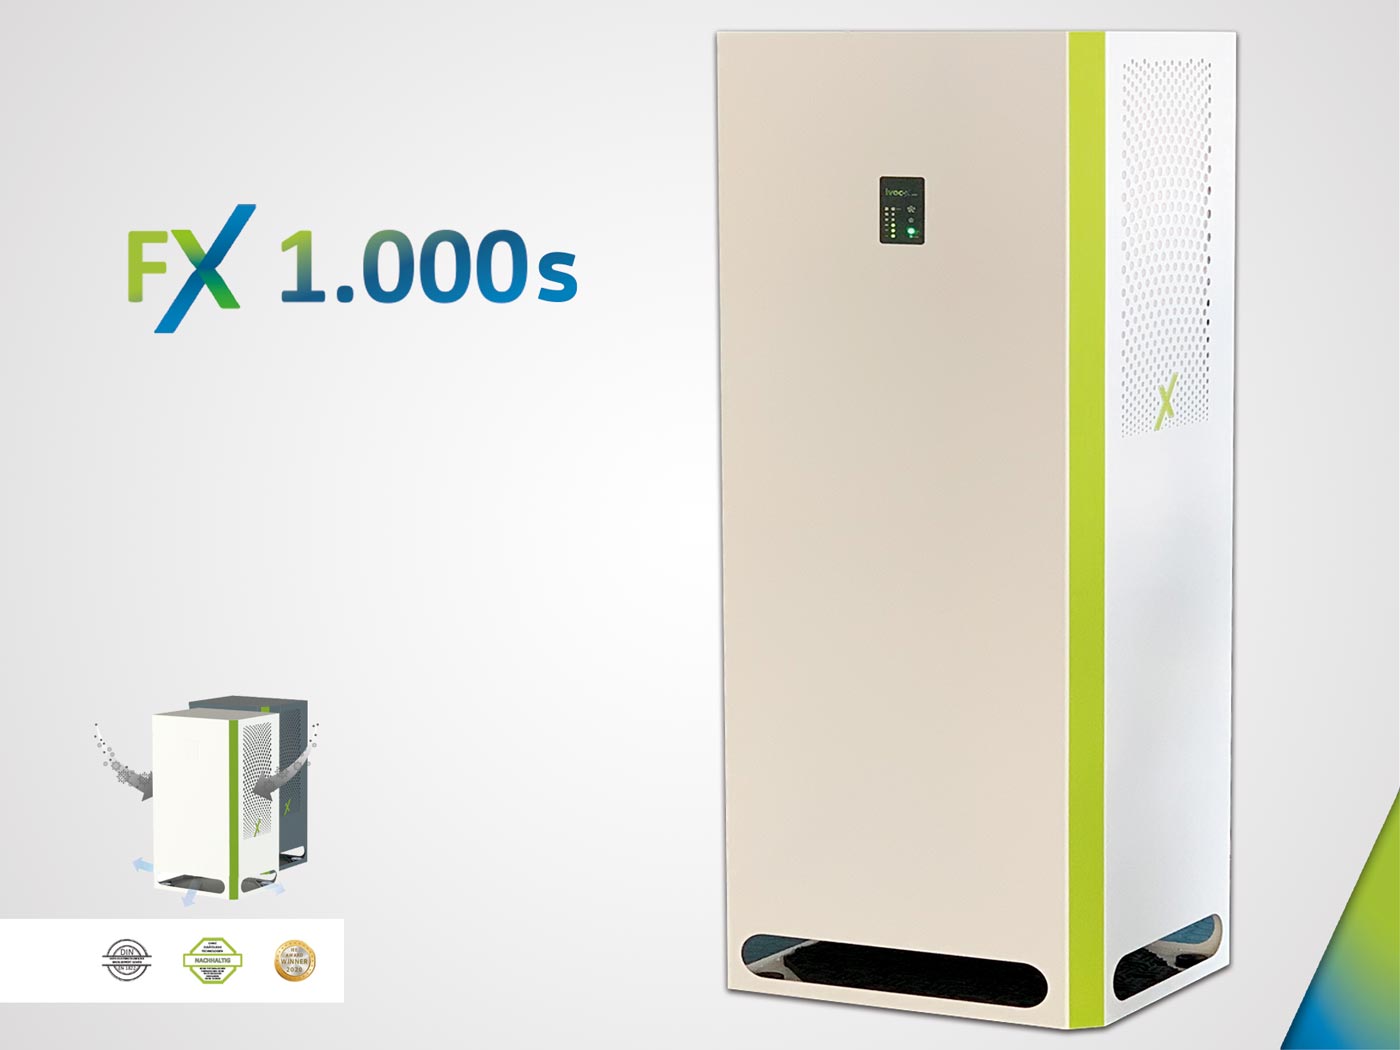 IVOC-X FX 1.000S - Luftreiniger superleise,weiss/grün - im GOLDSTIEN.SHOP verfügbar mit Gratisversand ab Schweizer Lager! (4260739140064)